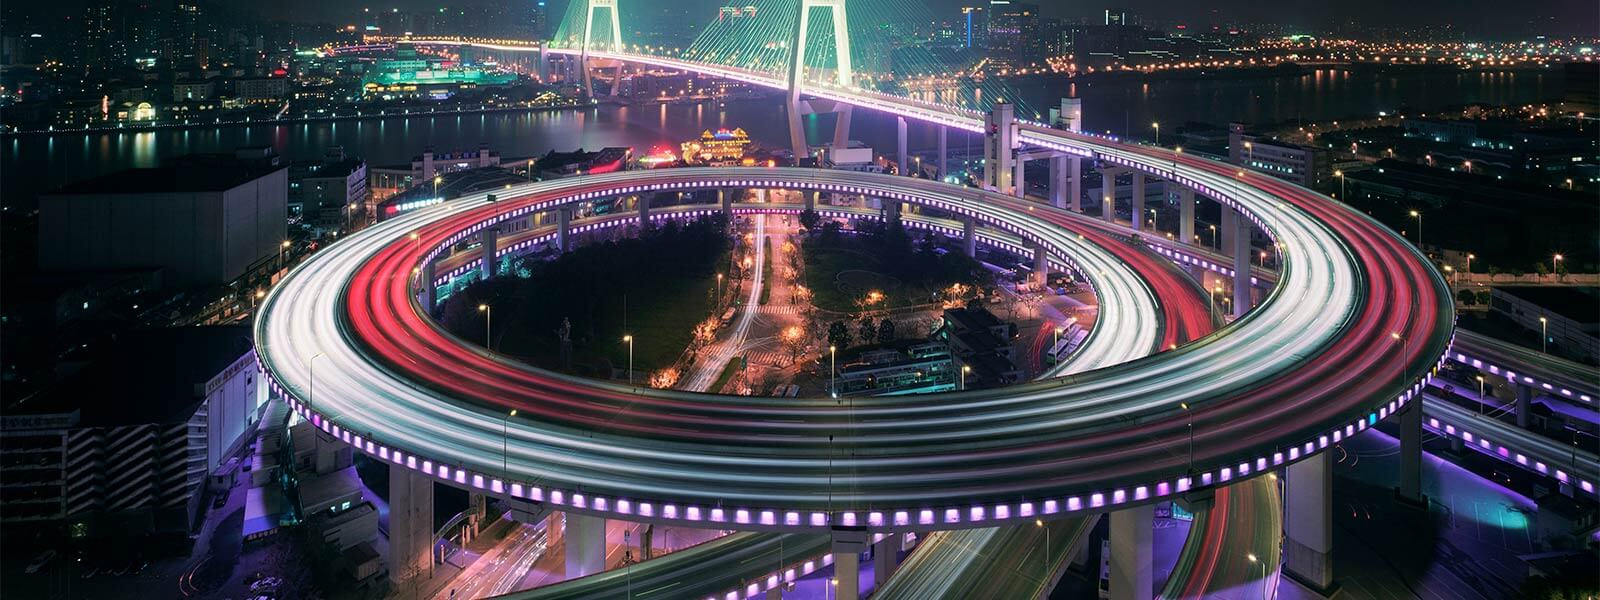 Fotografia em área urbana de uma ponte que atravessa um rio e possuí um viaduto circular iluminado